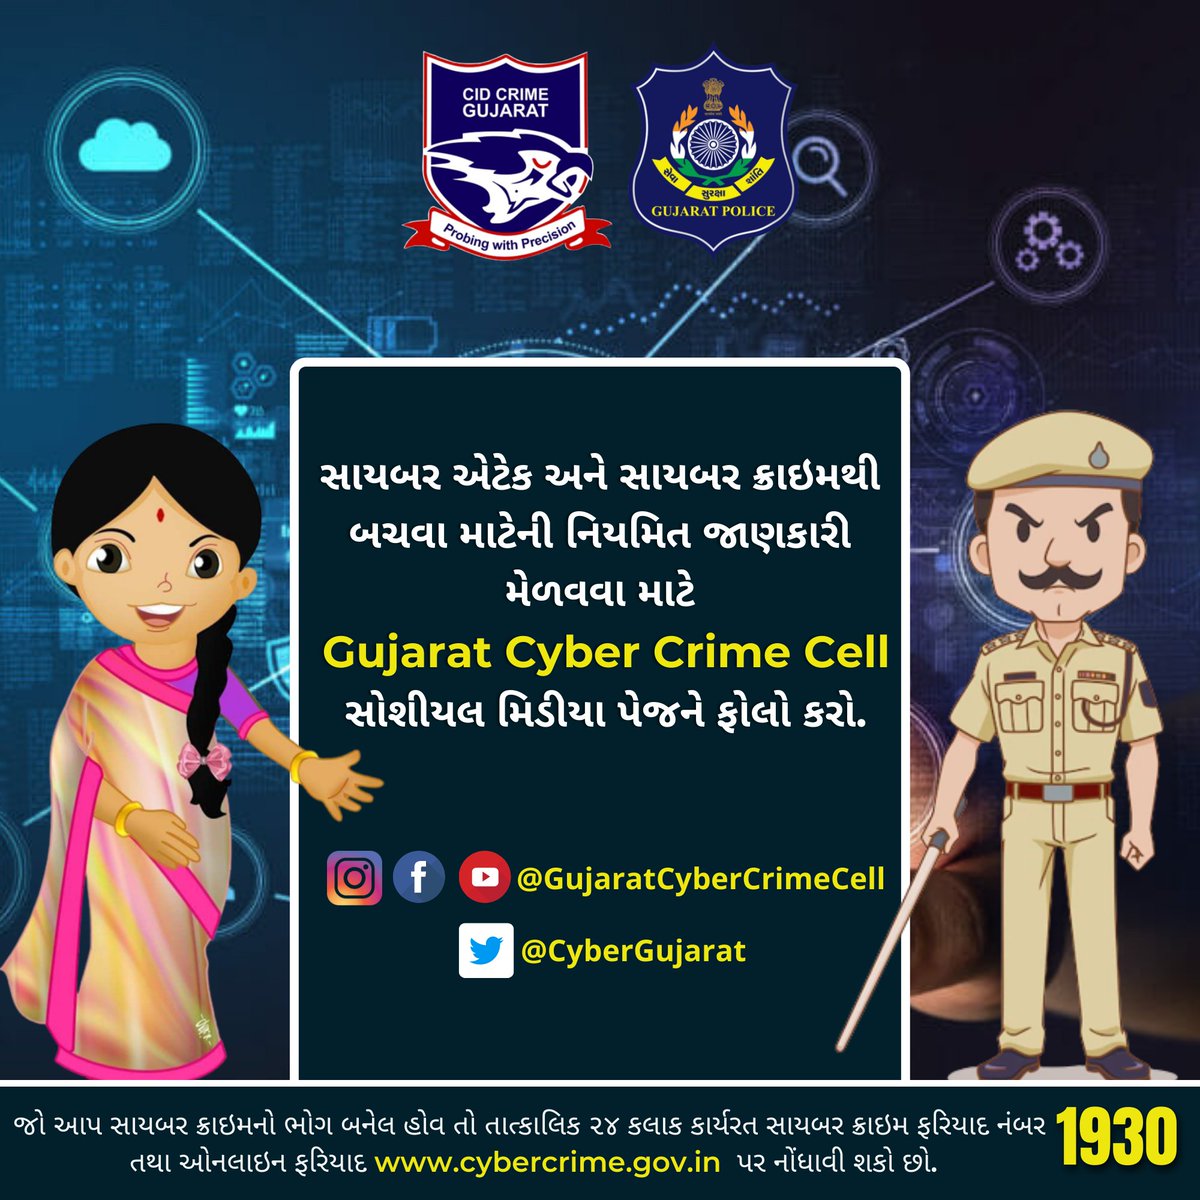 સાયબર એટેક અને સાયબર ક્રાઇમથી બચવા માટેની નિયમિત જાણકારી મેળવવા માટે

Gujarat Cyber Crime Cell સોશીયલ મિડીયા પેજને ફોલો કરો.

#gujaratpolice #girlsafety #safety #cyberscam #cyberfraud #cybersafety #cybergujarat #cybersecurity #cyberawareness #cybercrime #gujaratpolice